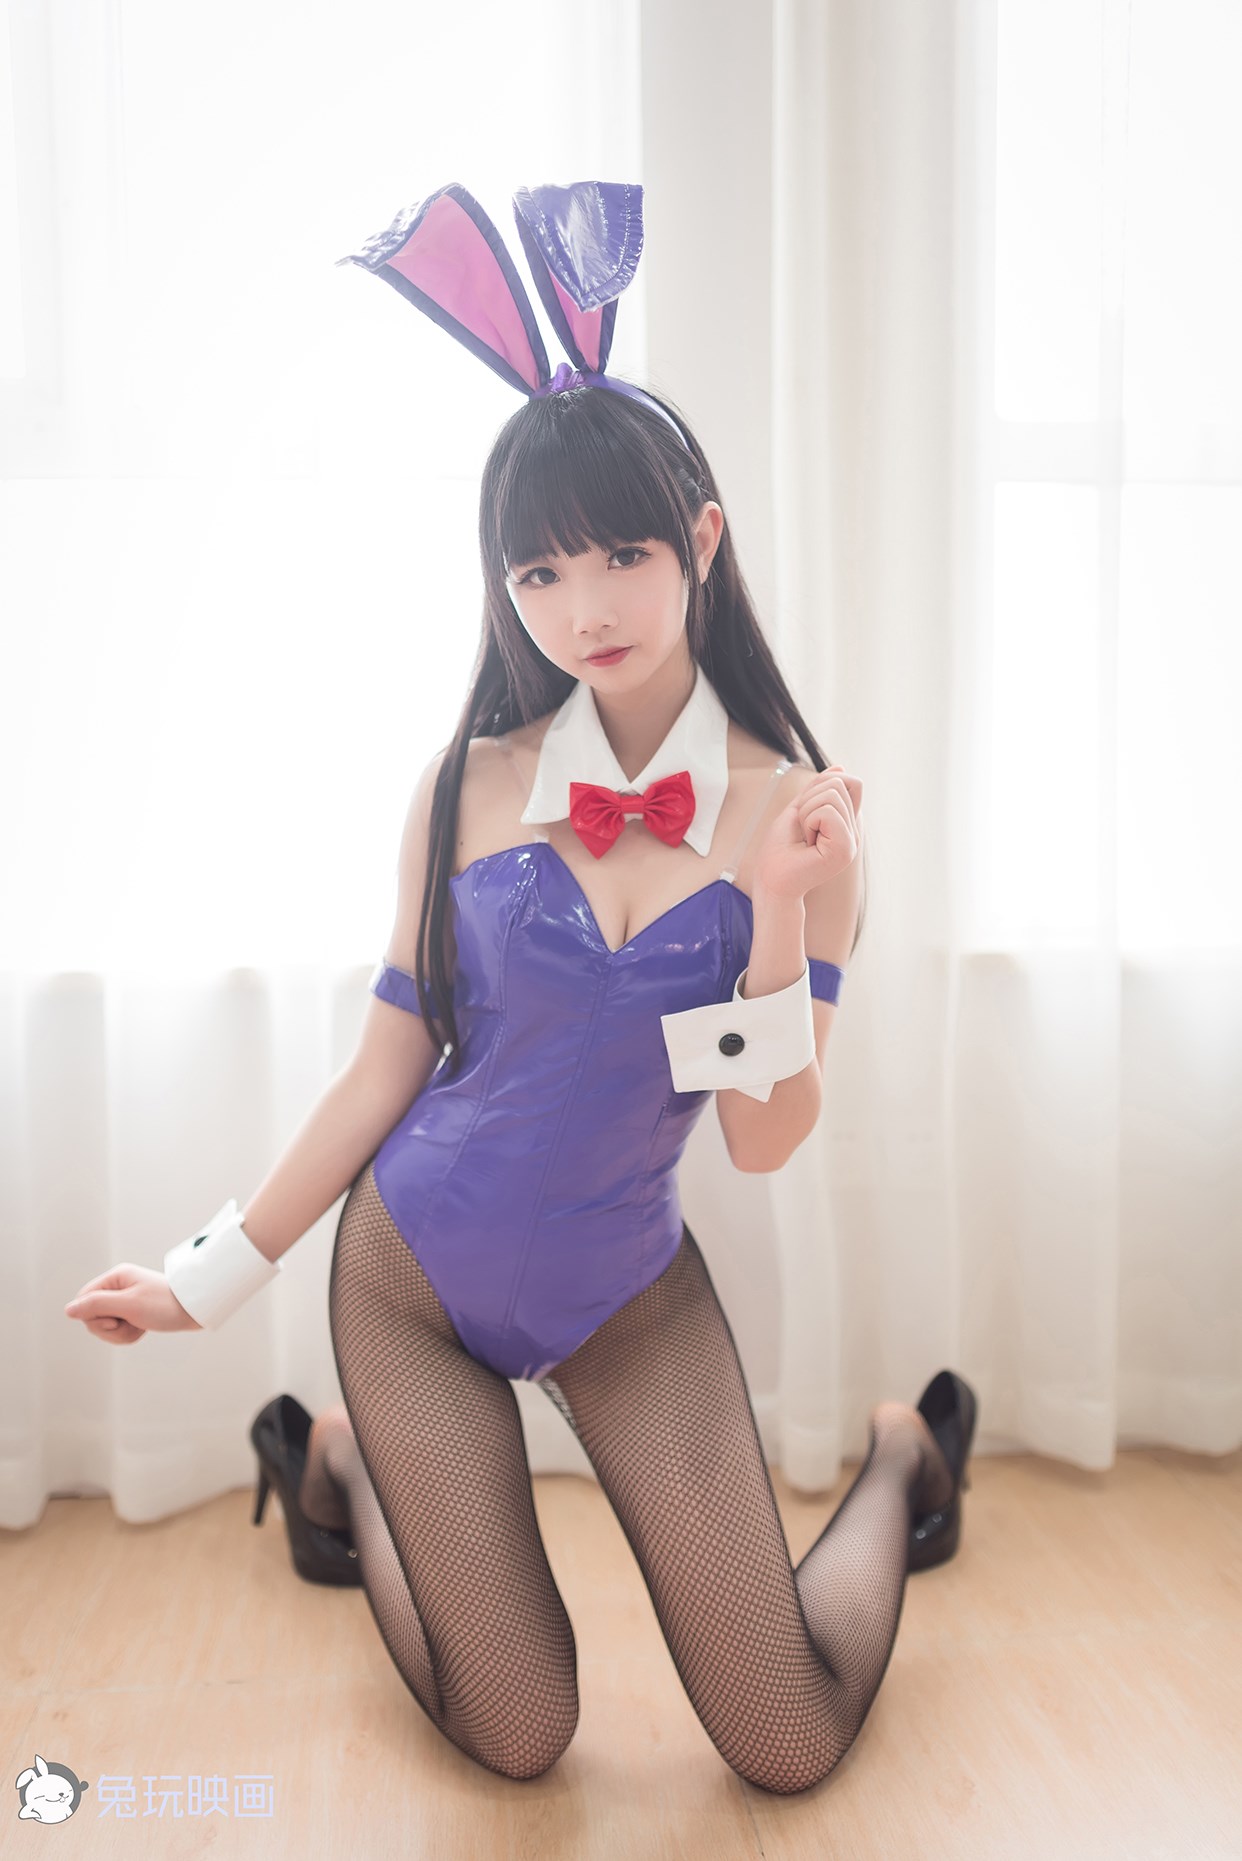 【兔玩映画】兔女郎vol.o7 - 雪琪 兔玩映画 第5张